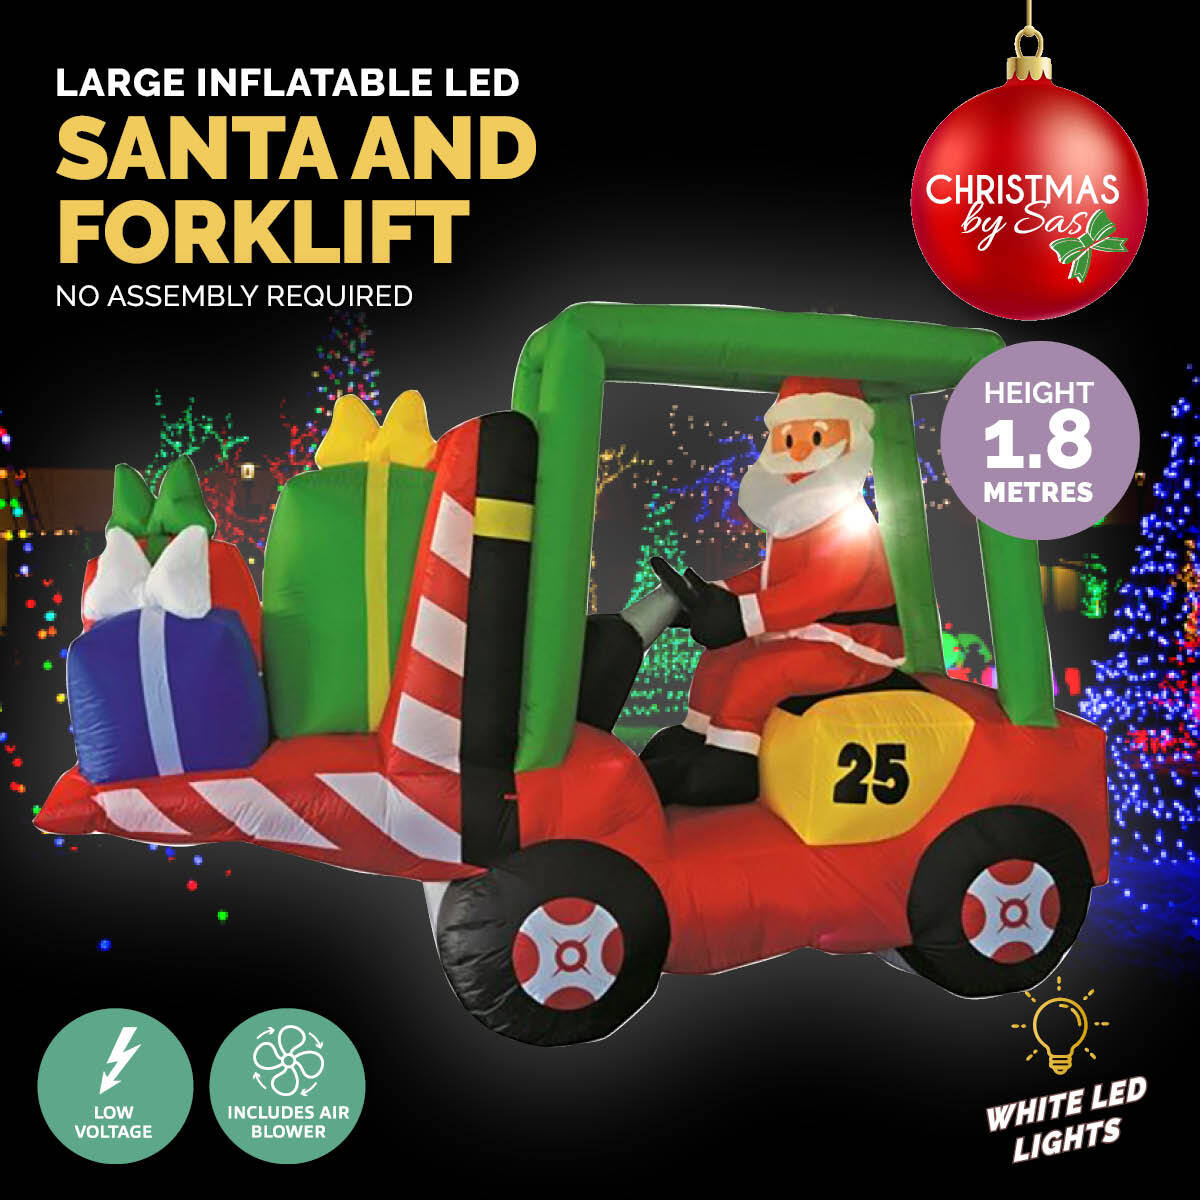 2.4 x 1.8m Santa & Forklift Built-In Blower LED Lighting